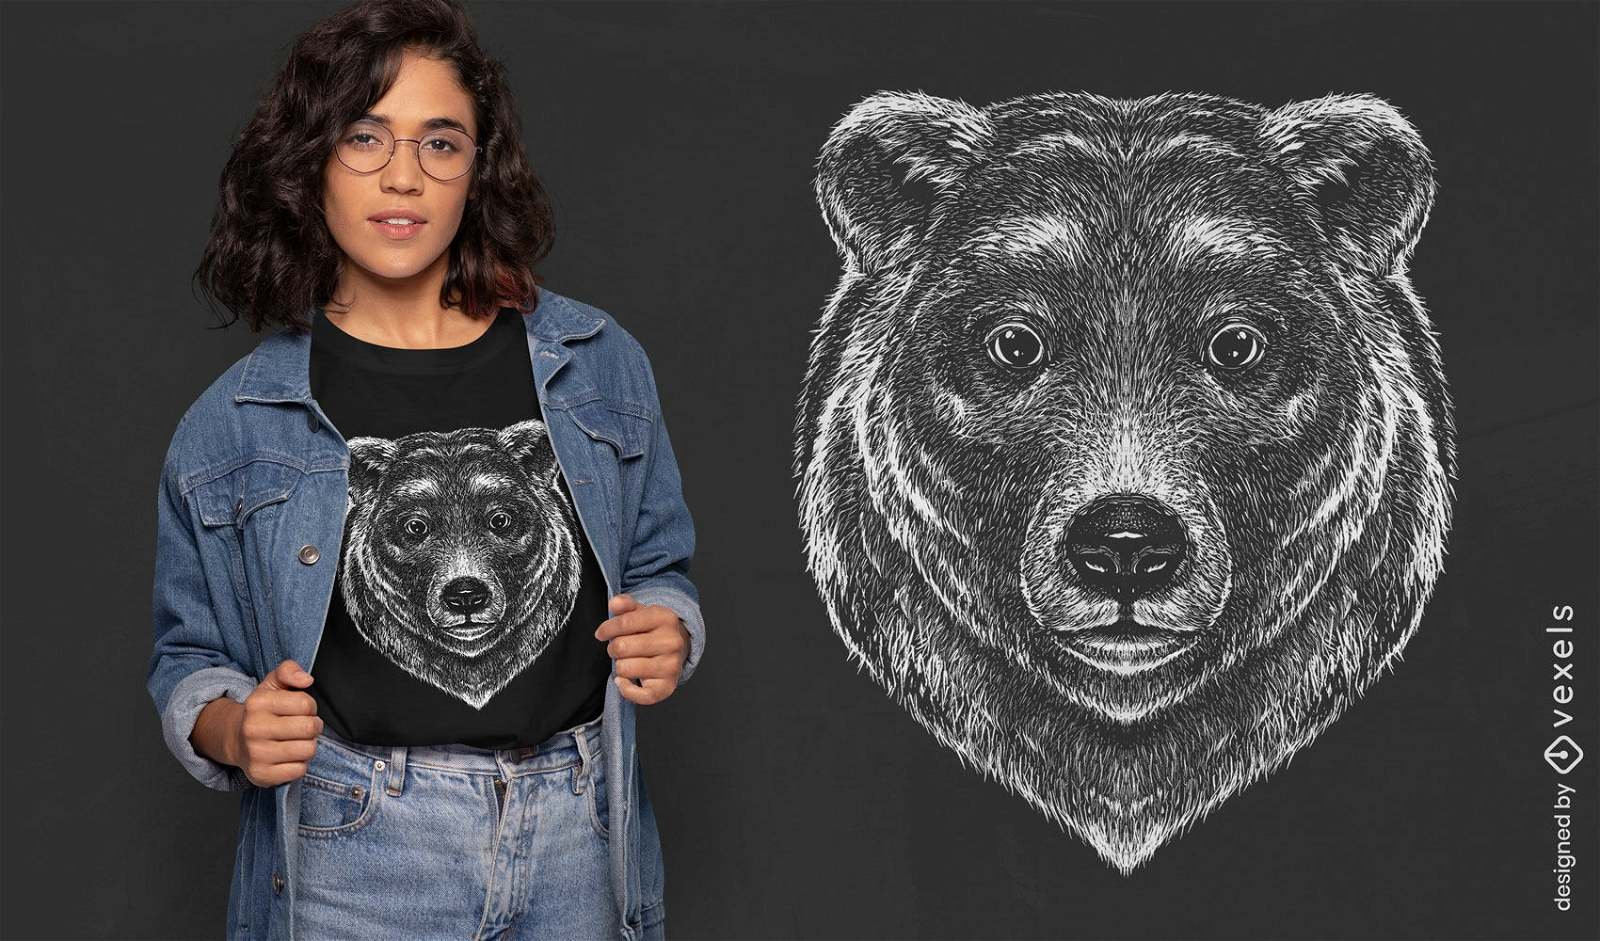 Detailliertes T-Shirt-Design mit Grizzlyb?r-Gesicht